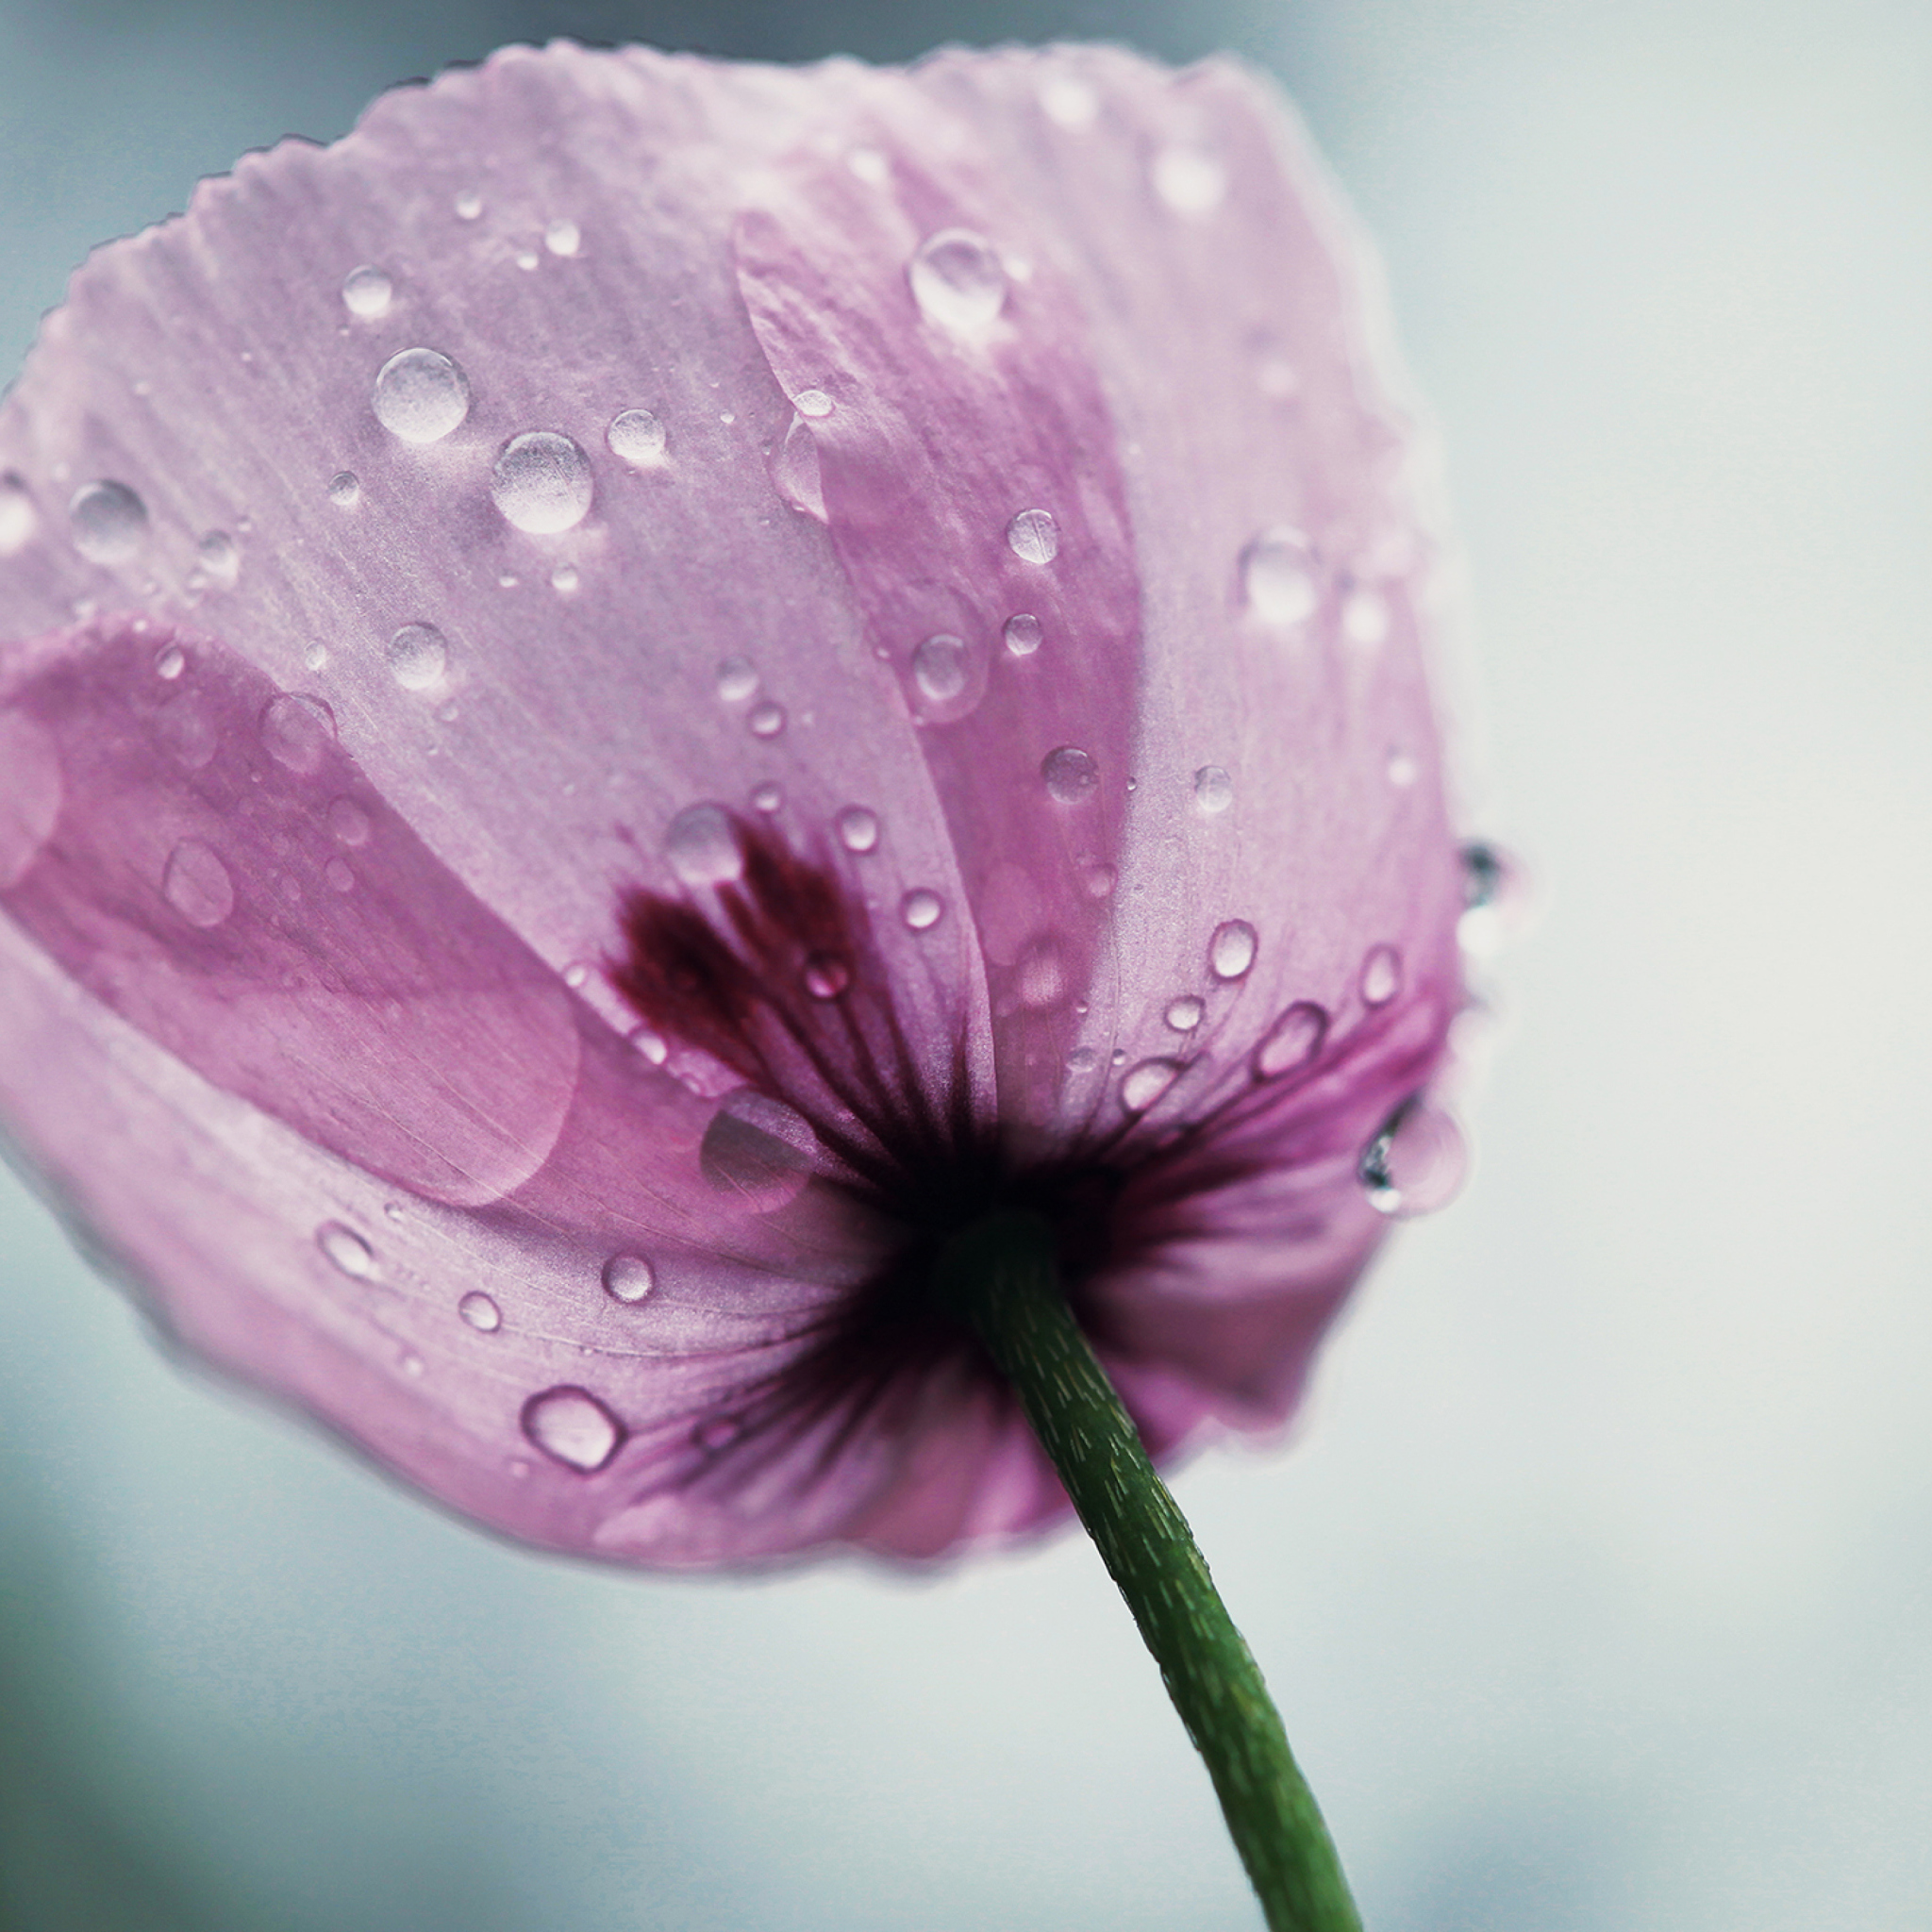 Dew Drops On Flower Petals screenshot #1 2048x2048